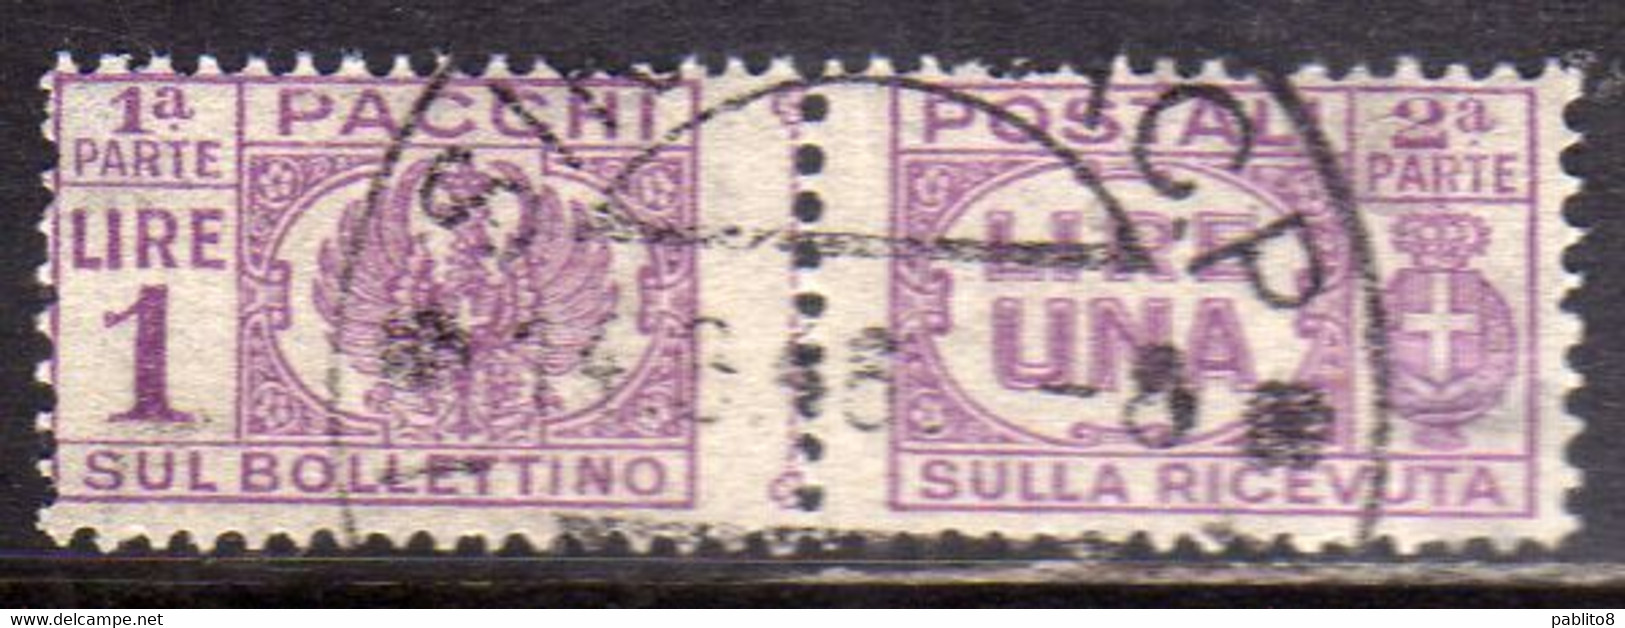 ITALIA REGNO ITALY KINGDOM 1946 LUOGOTENENZA PACCHI POSTALI PARCEL POST SENZA FASCIO LIRE 1 LIRA USATO USED OBLITERE' - Paketmarken